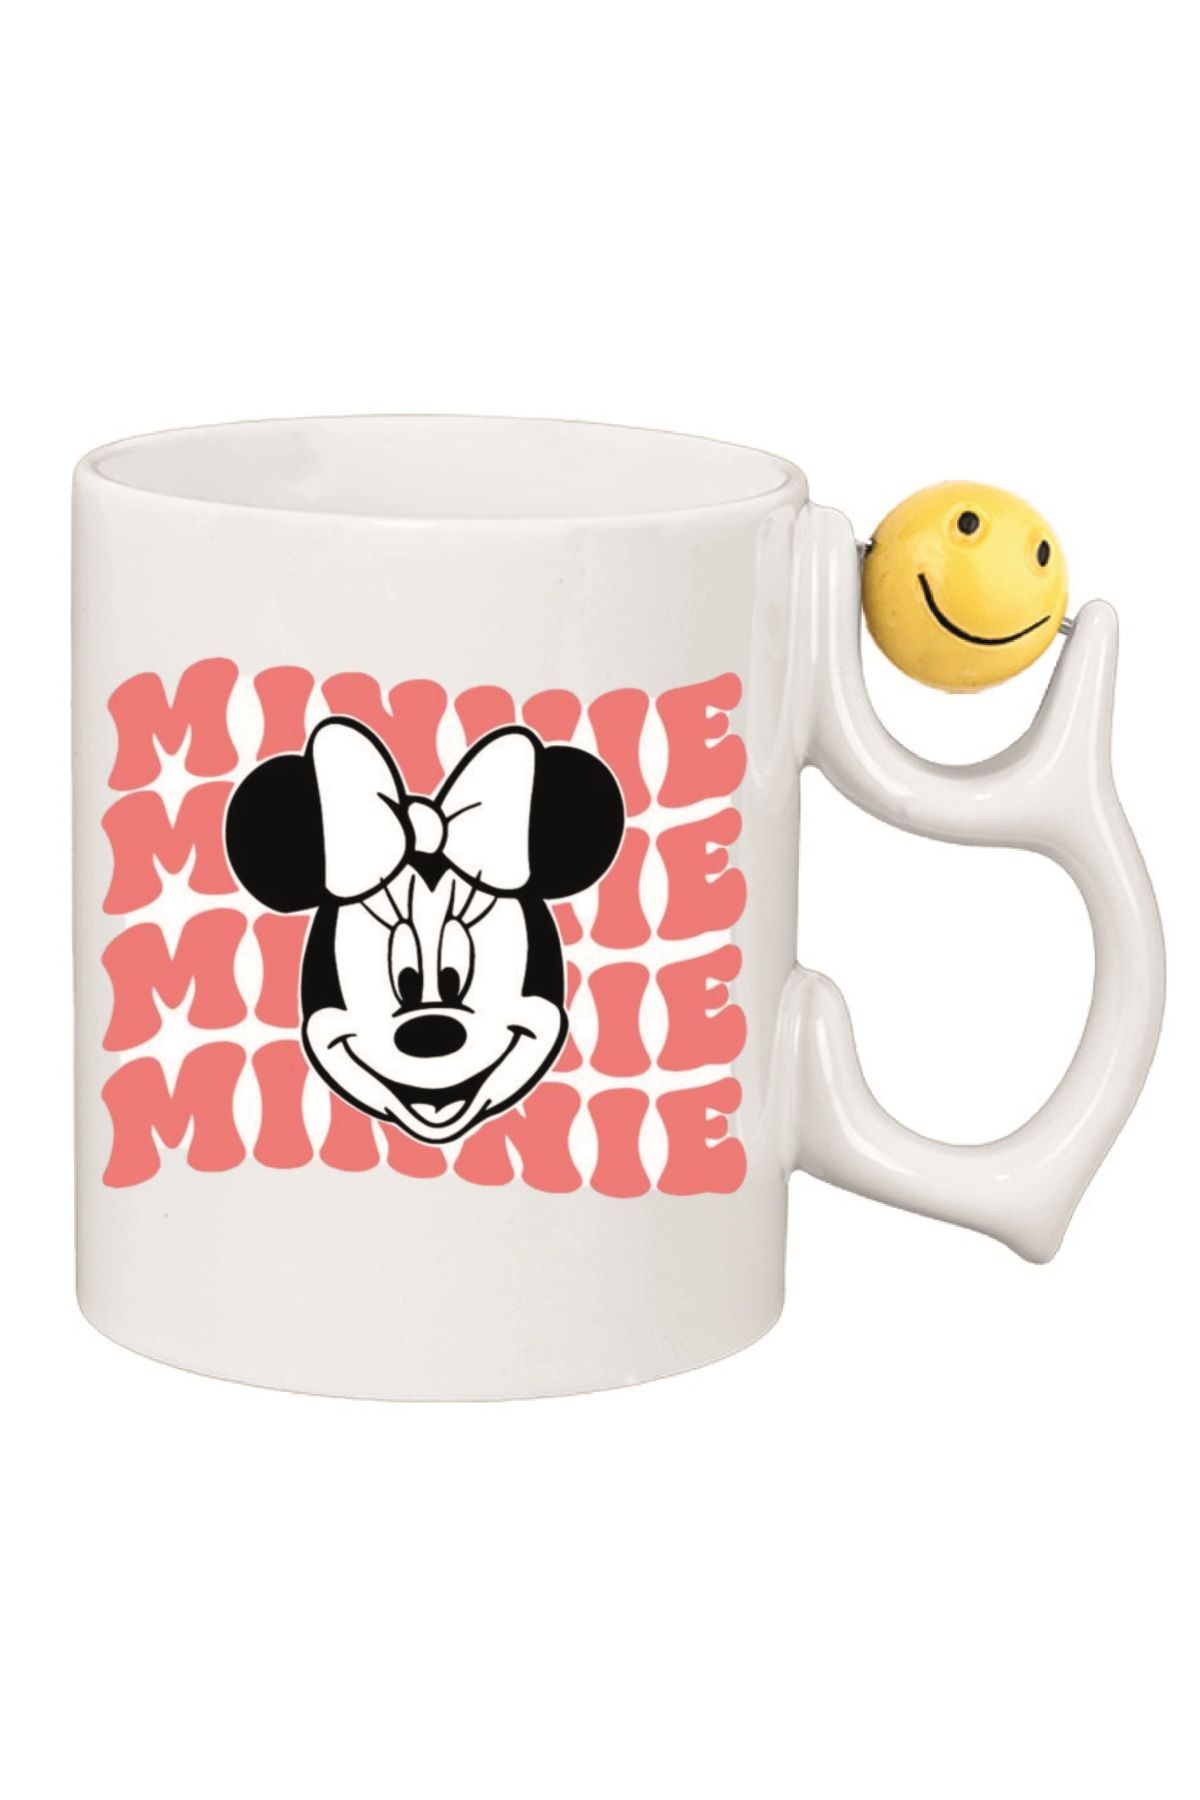 newayerwest Minnie Mouse Çocuk Emoji ve Kalp Kulplu Özel Süblimasyon Kaliteli Baskılı Porselen Kupa Bardak